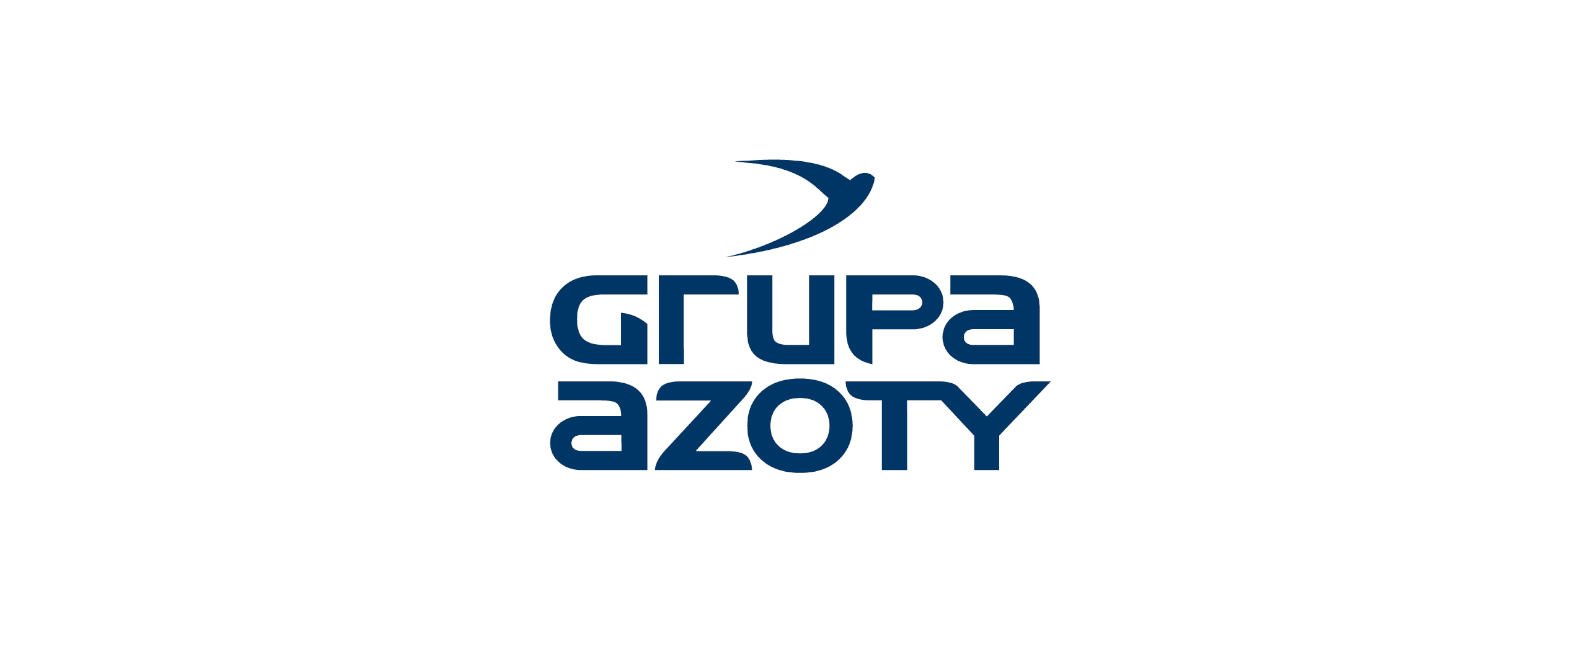 Oświadczenie Grupy Azoty S.A. w związku z informacją o wszczęciu śledztwa przez Prokuraturę Okręgową w Lublinie